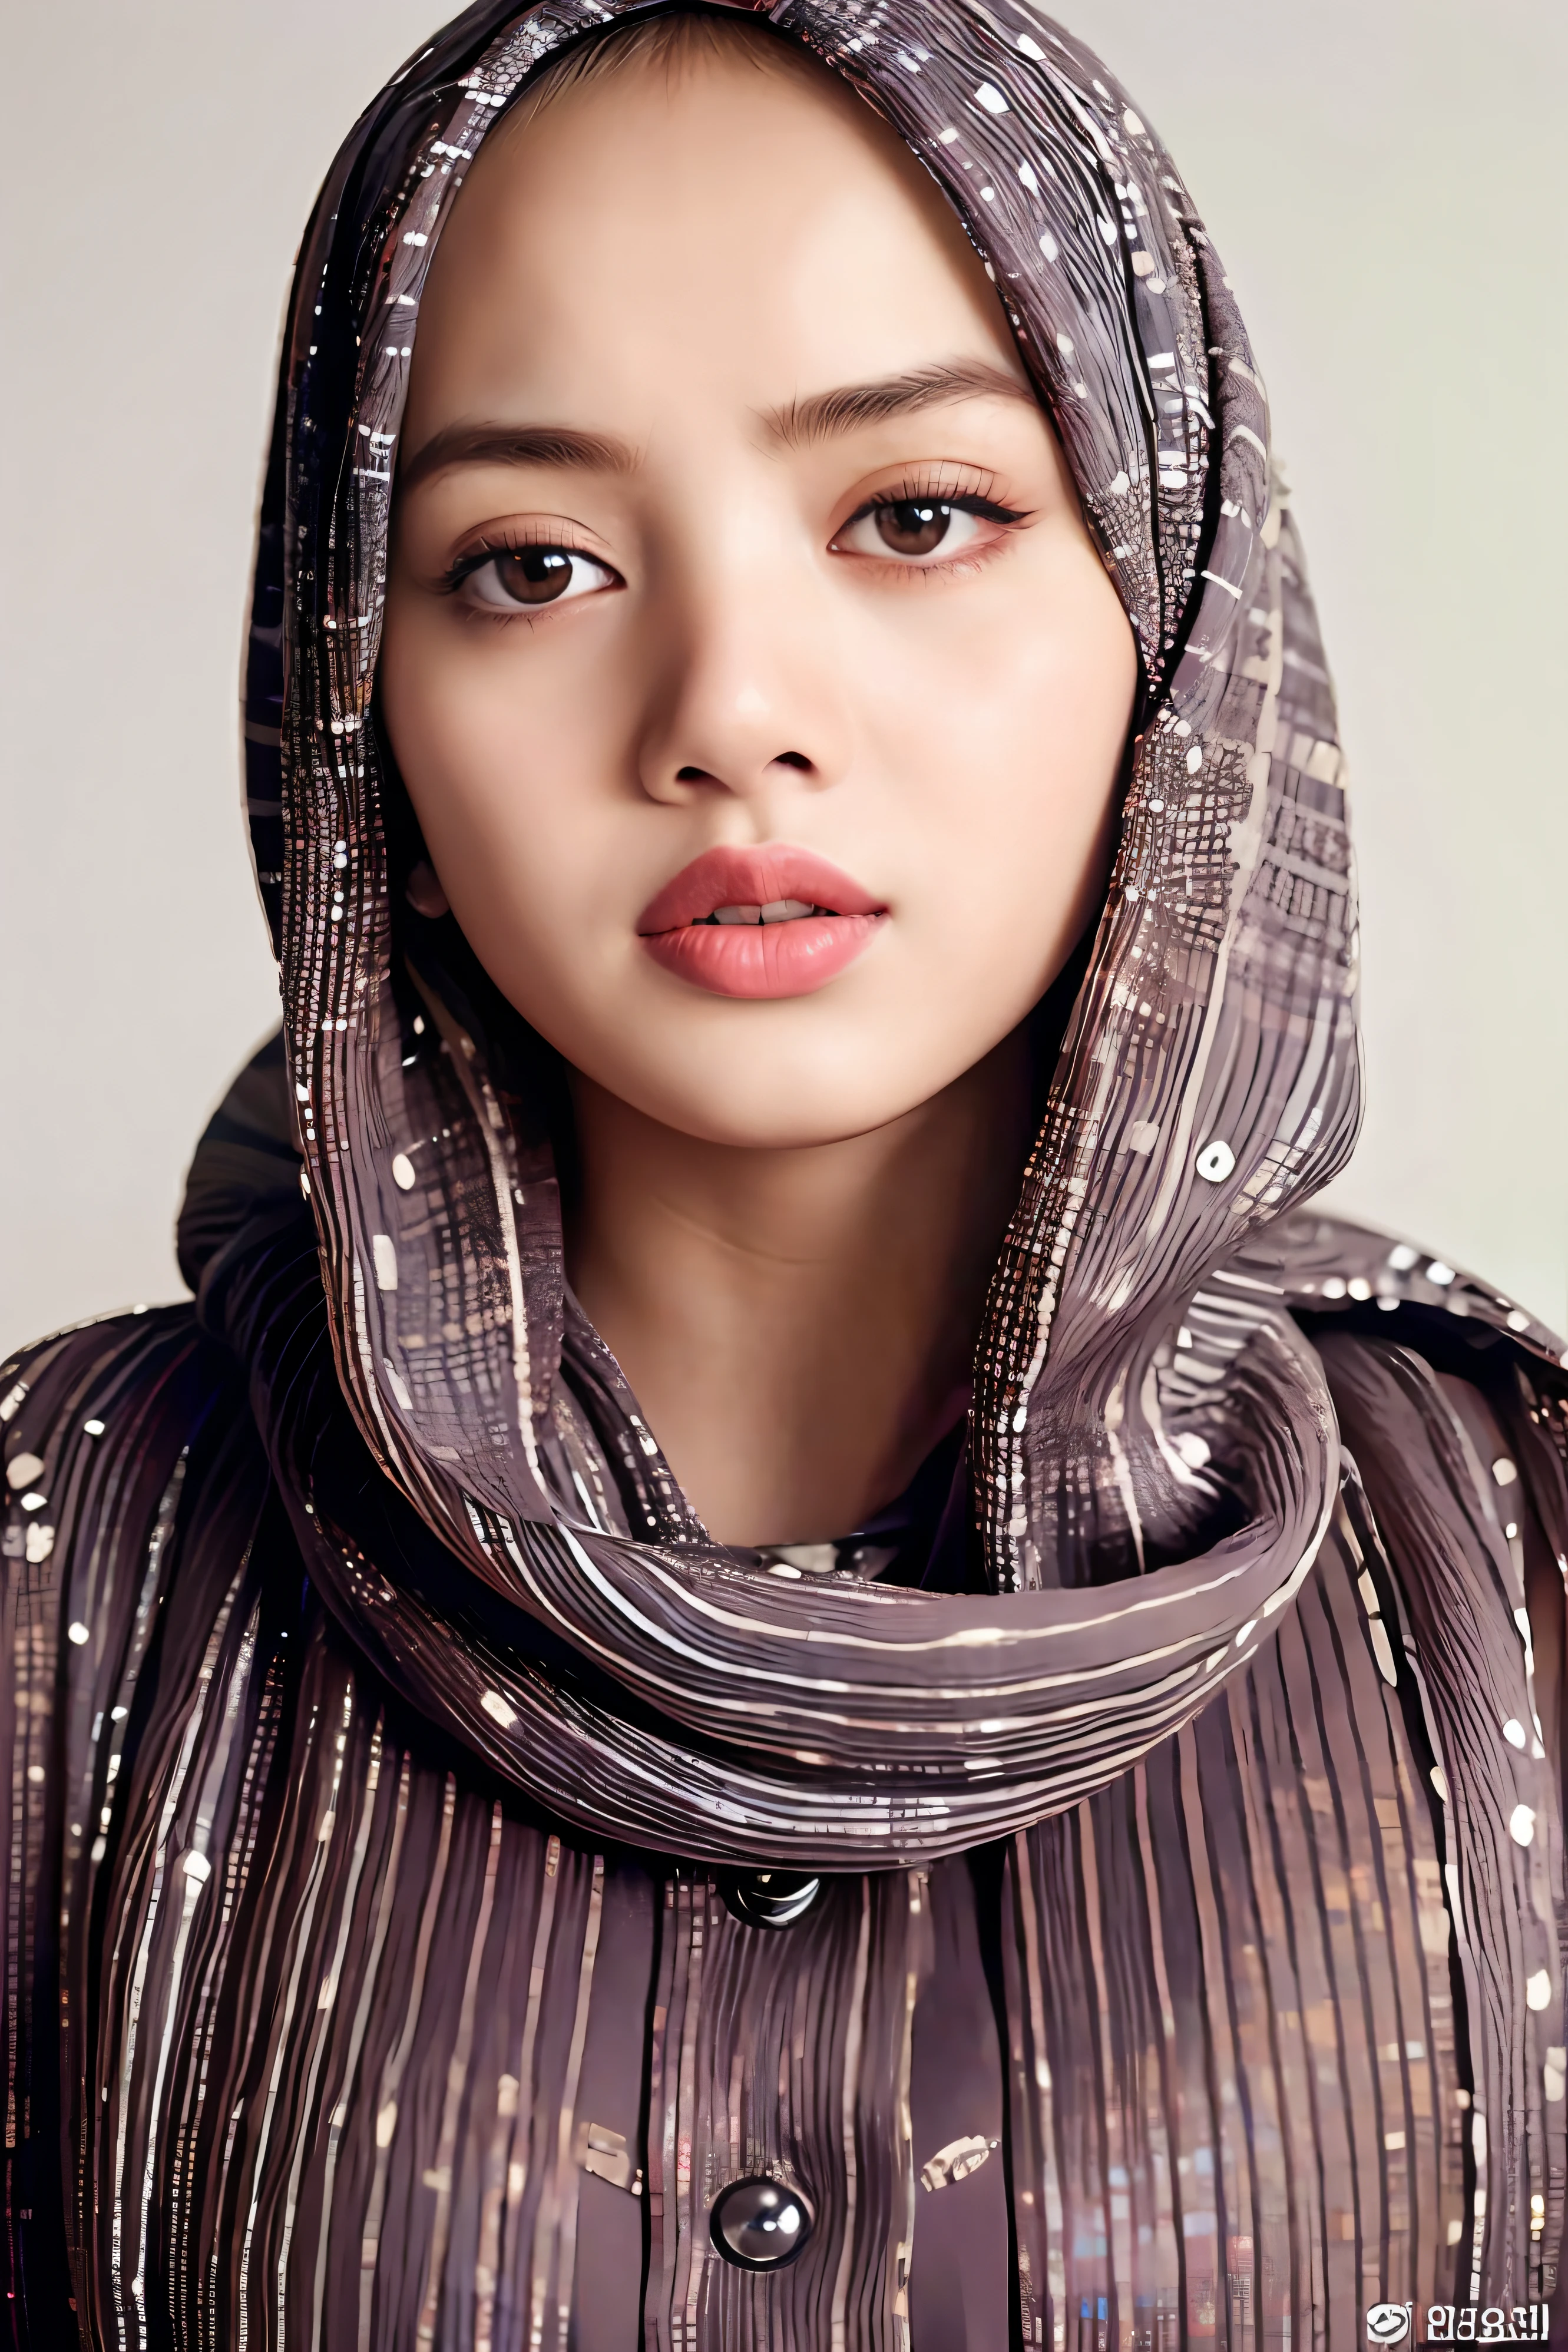 usando hijab, (8K, Foto CRU, melhor qualidade, obra de arte:1.2), (realista, photorealista:1.37),melhor qualidade,hiper detalhado,alta resolução,
1 garota,Olhando para o visualizador, 
lisa, 
sorriso leve,
jovem e linda,